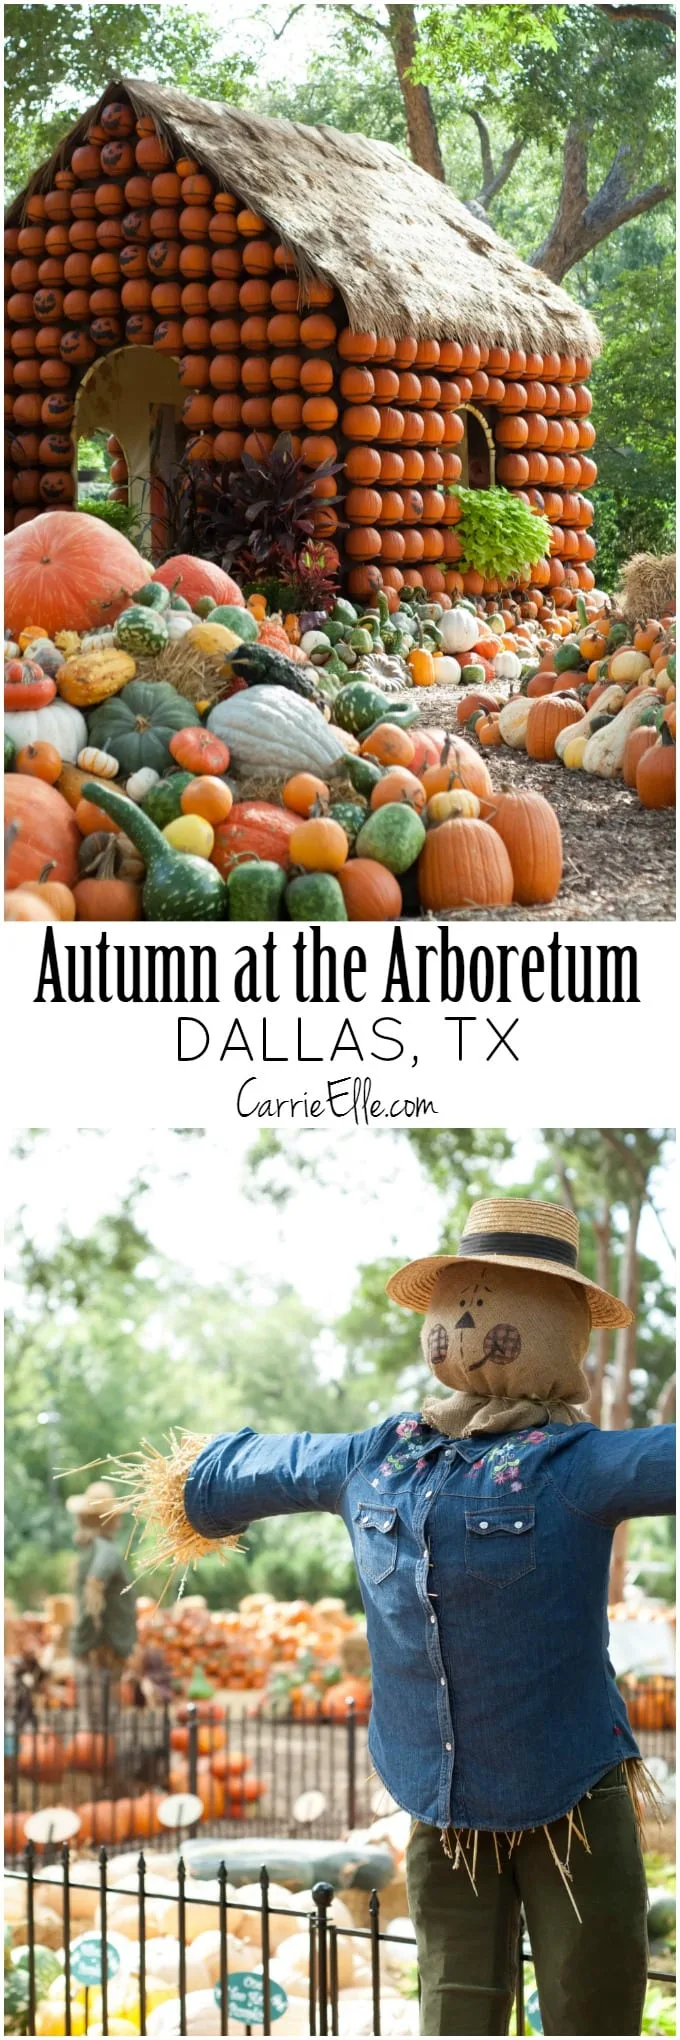 Autumn at the Arboretum Dallas